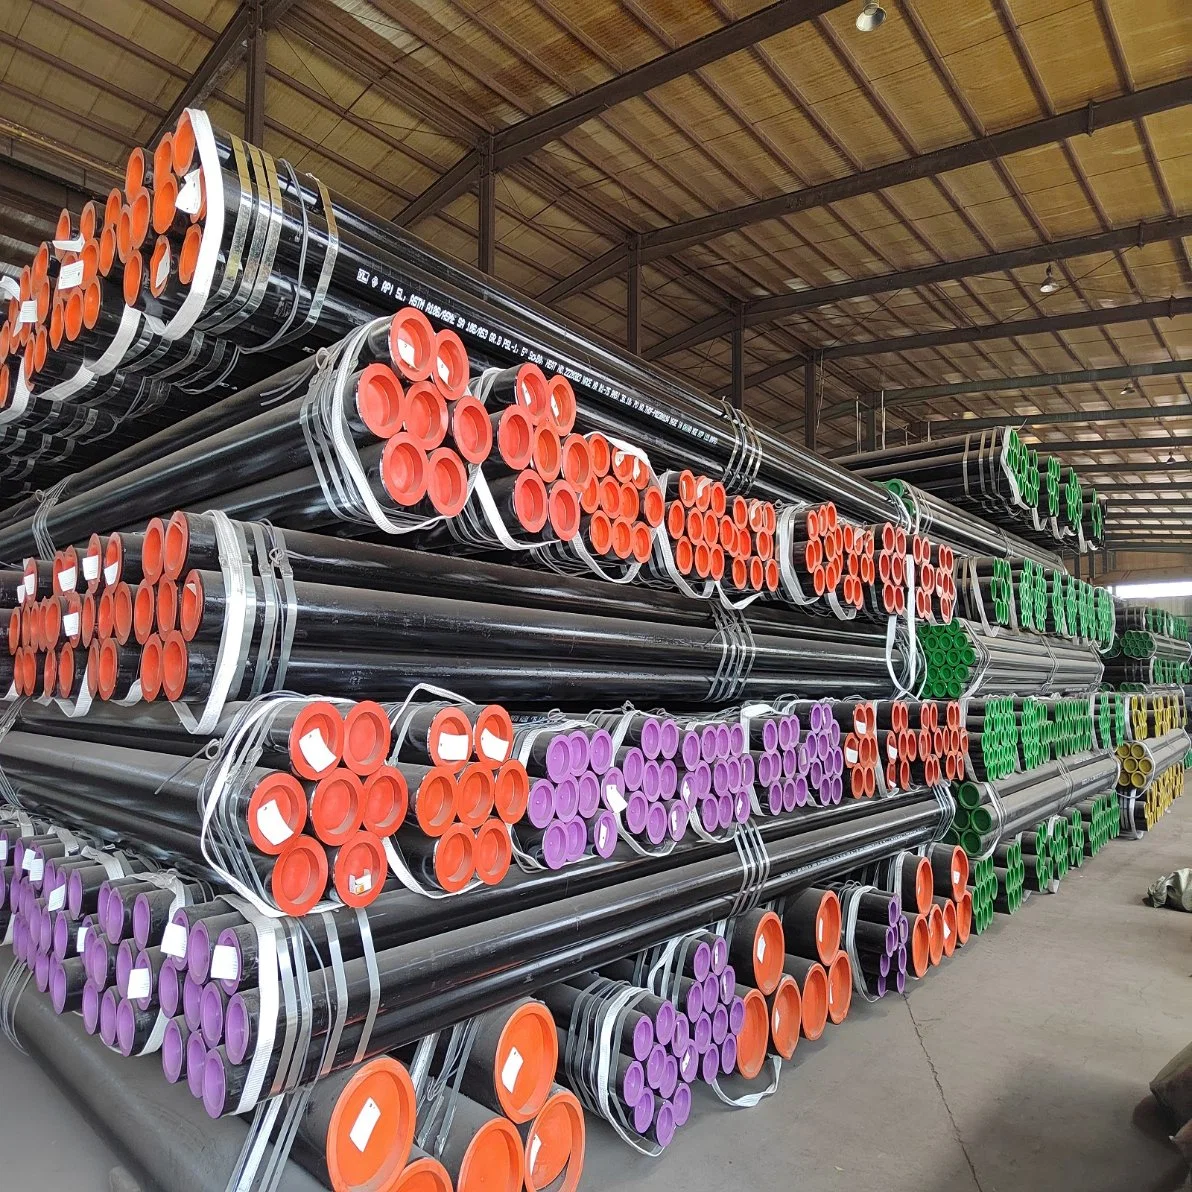 Spot fabricante de tubos de acero templado de la serie 400 200 300 tubo redondo de acero al carbono